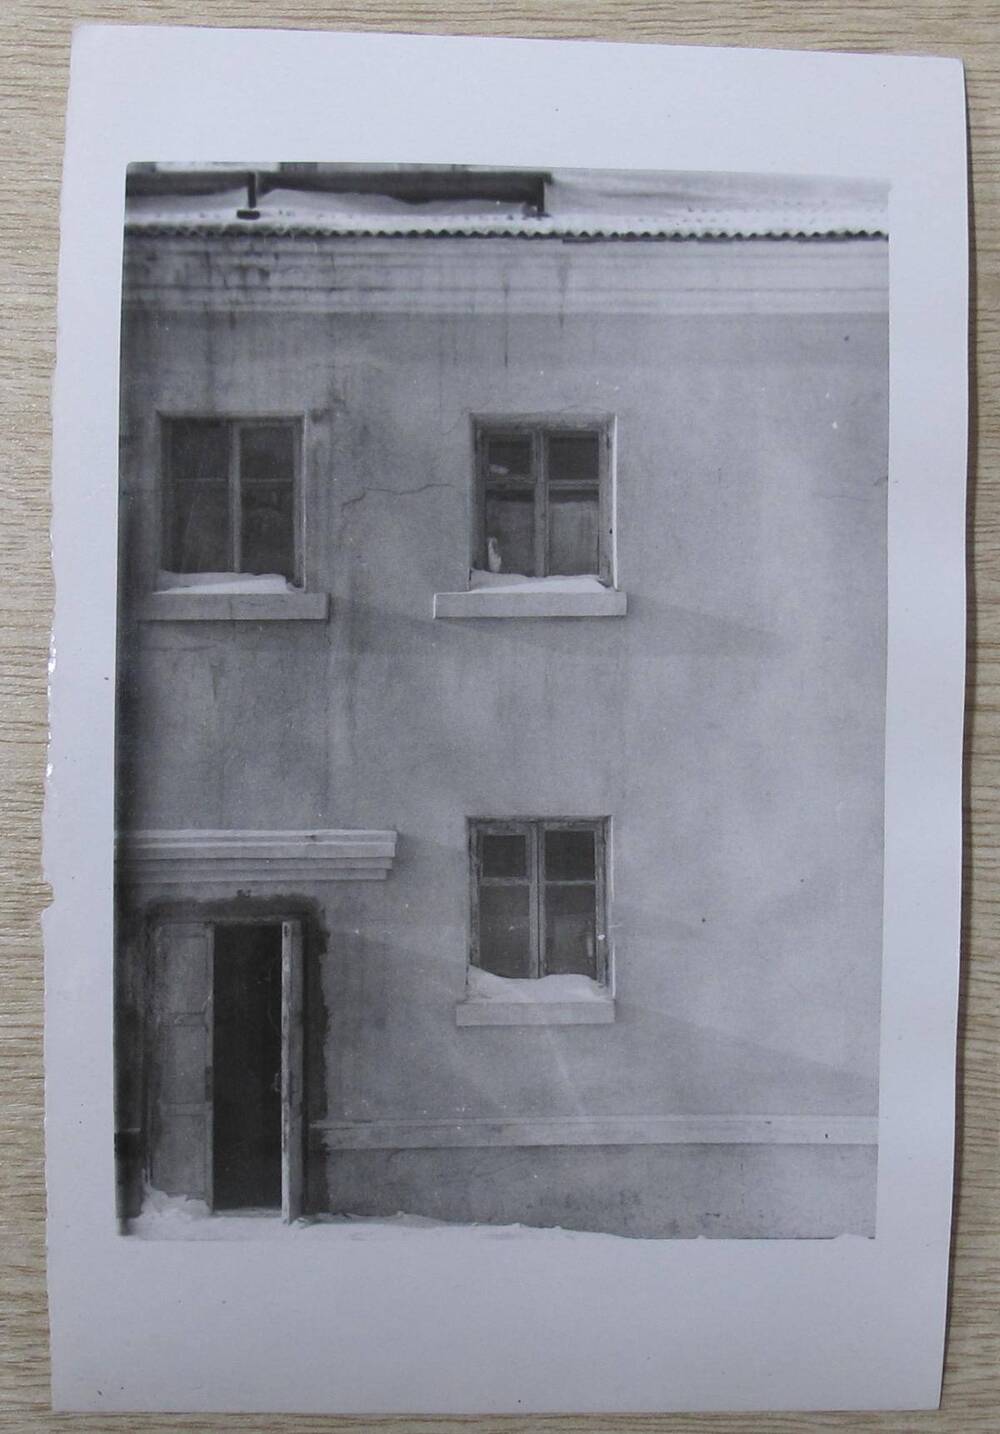 Фотография. Восточная стена дома в 2-х вариантах. Жилой дом по ул. К. Маркса, д. 25.